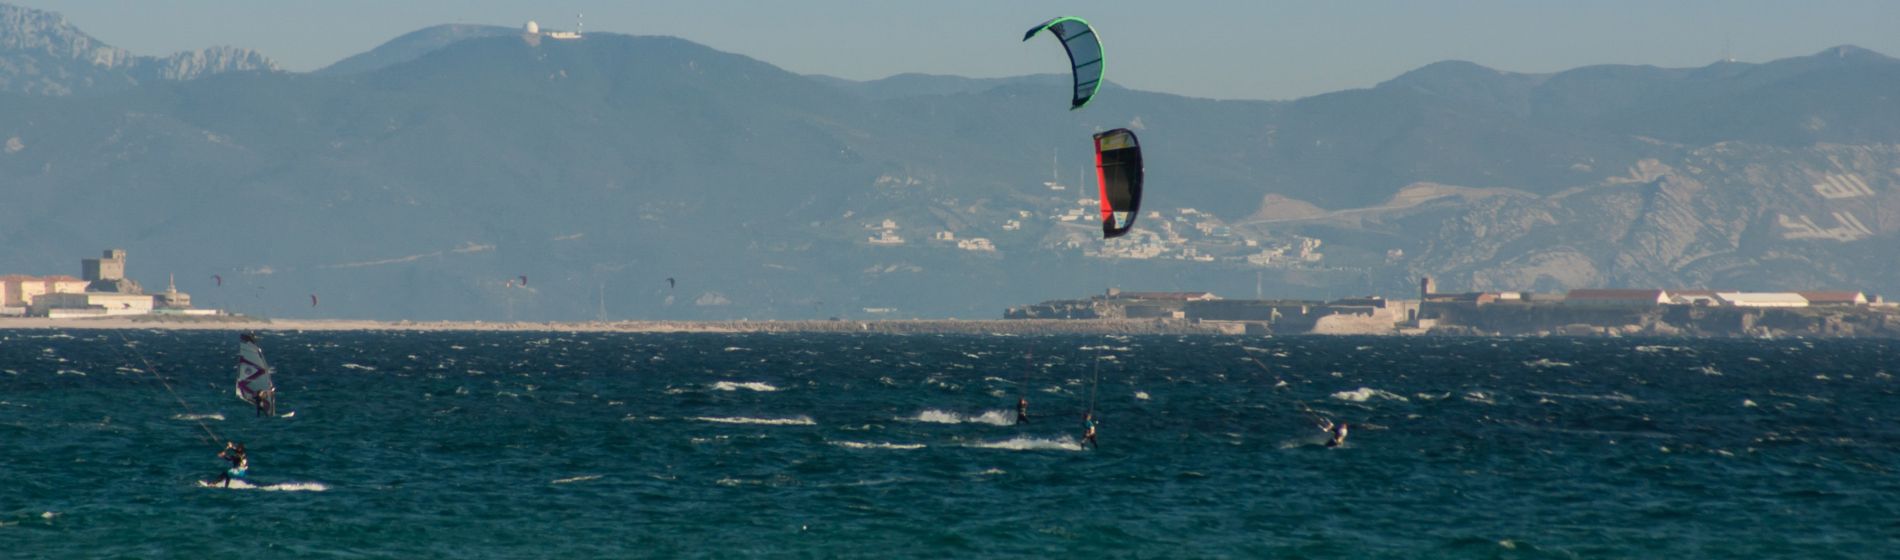 kite_surfing_-_header.jpg